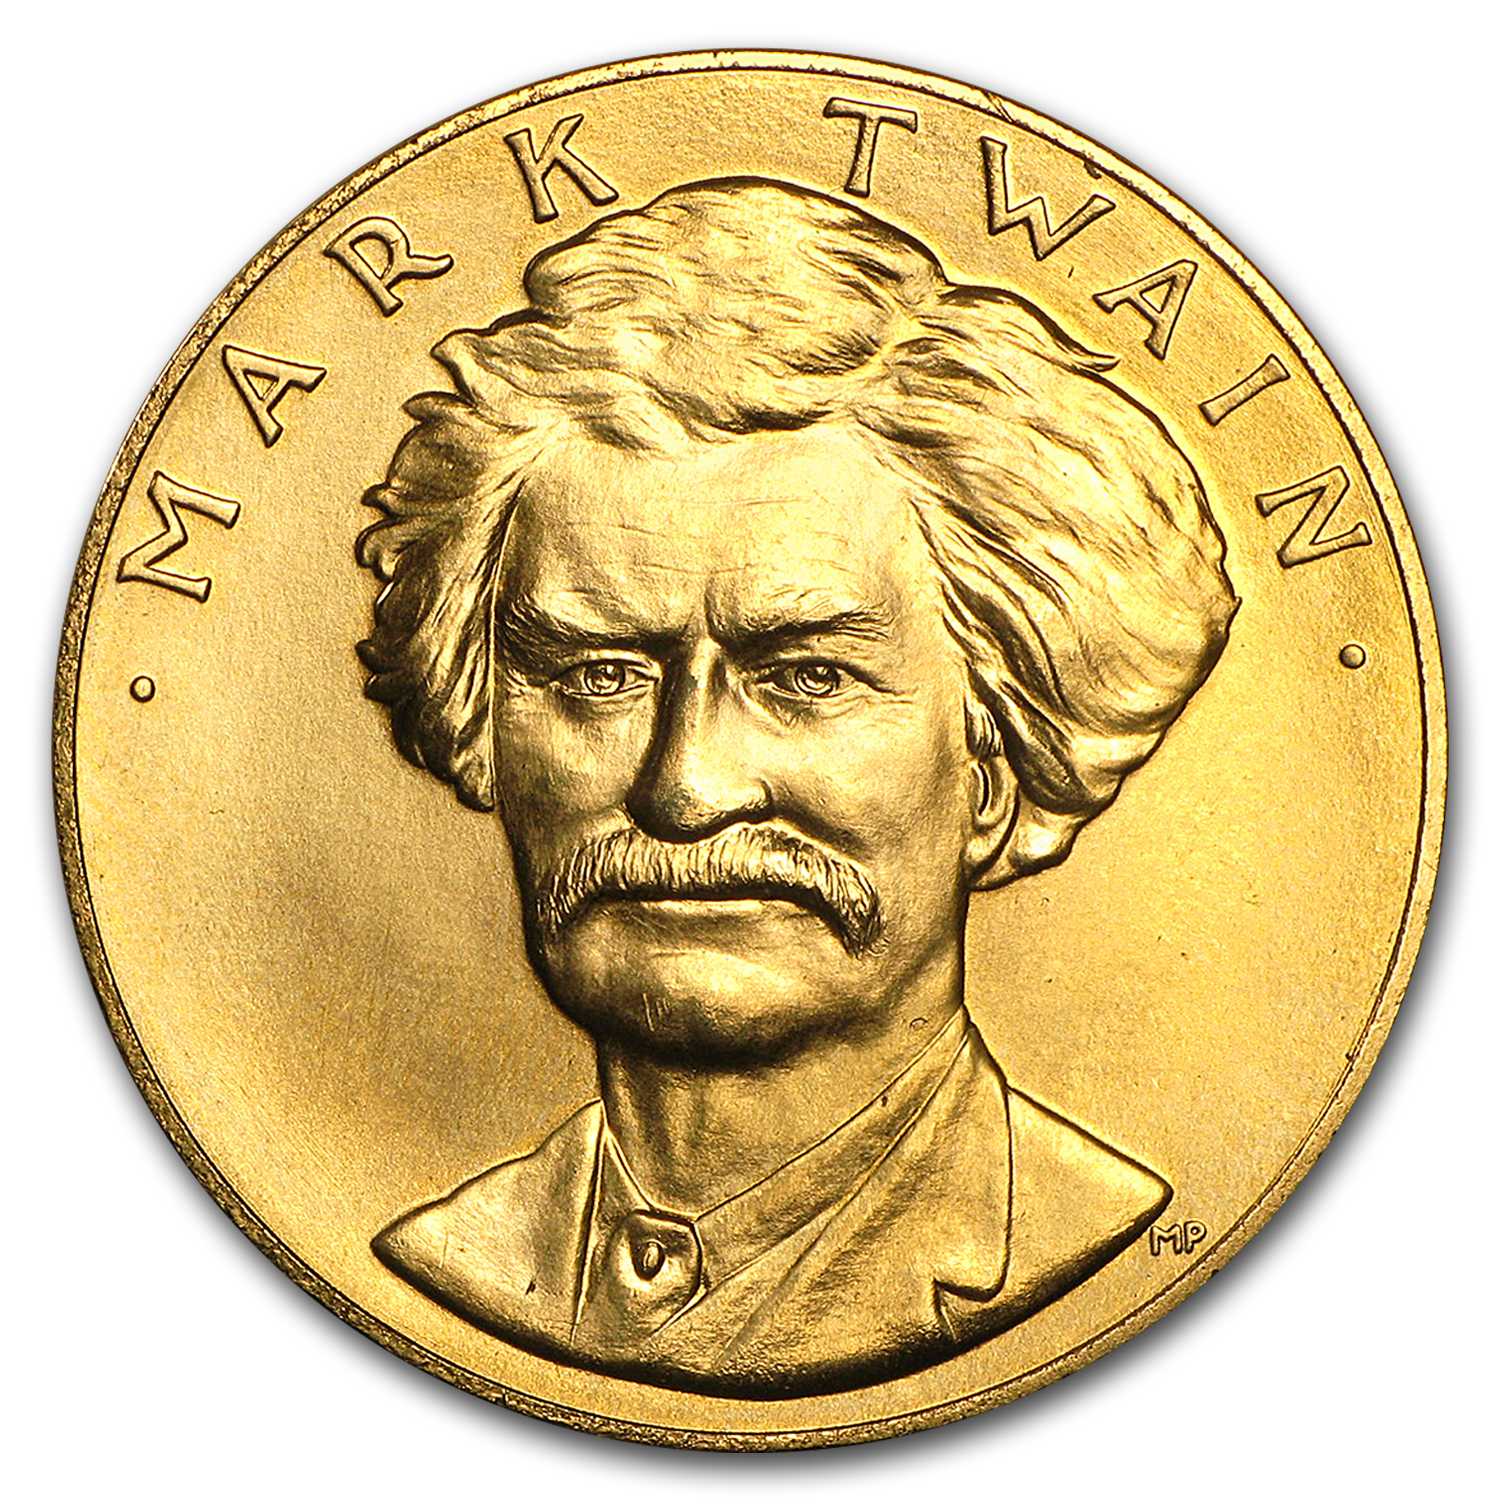 Buy U.S. Mint 1 oz Gold Commemorative Arts Medal Mark Twain